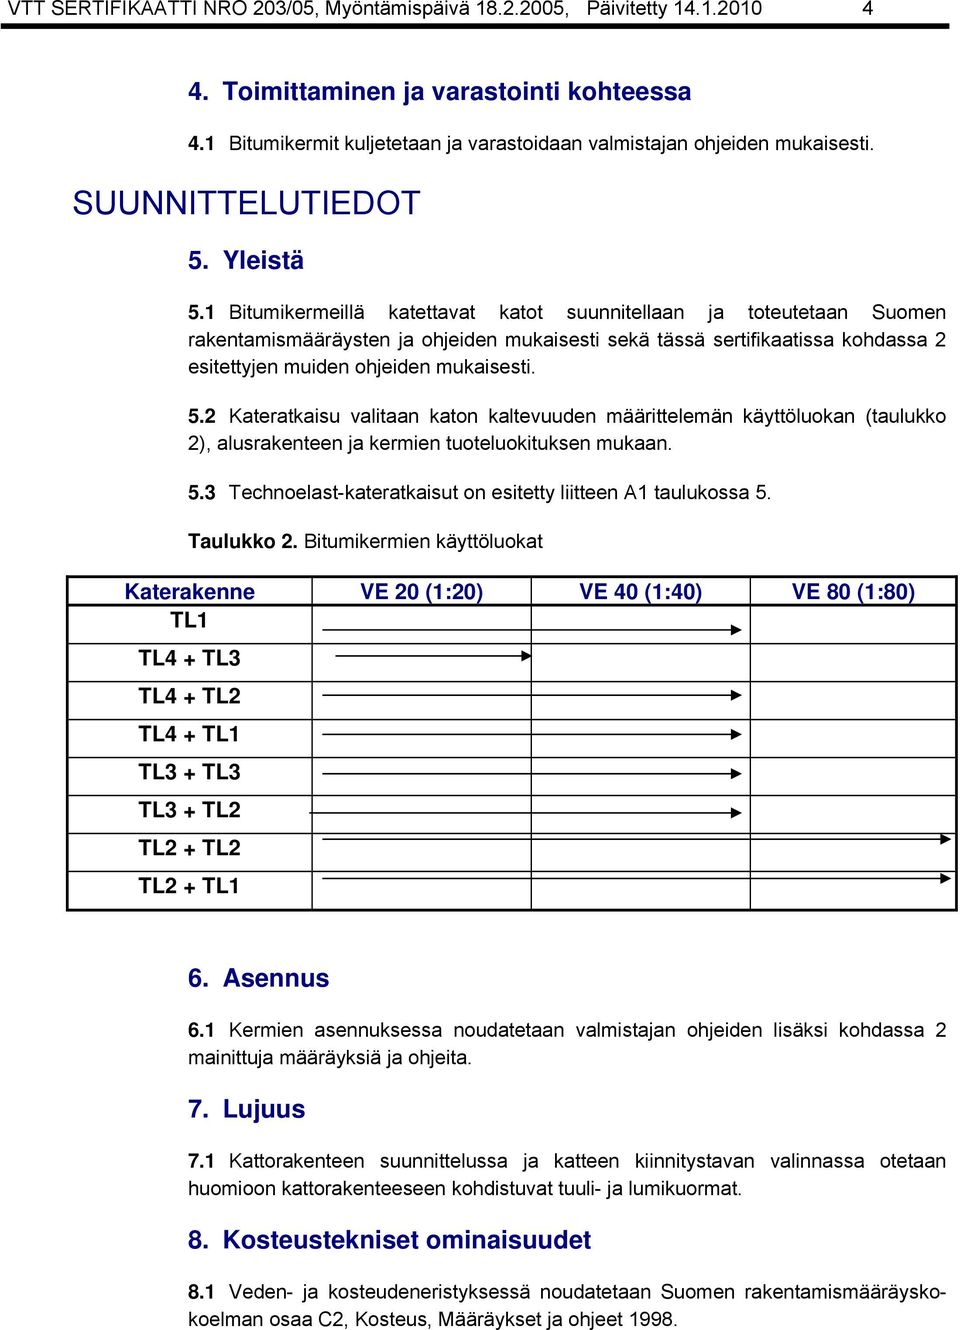 1 Bitumikermeillä katettavat katot suunnitellaan ja toteutetaan Suomen rakentamismääräysten ja ohjeiden mukaisesti sekä tässä sertifikaatissa kohdassa 2 esitettyjen muiden ohjeiden mukaisesti. 5.